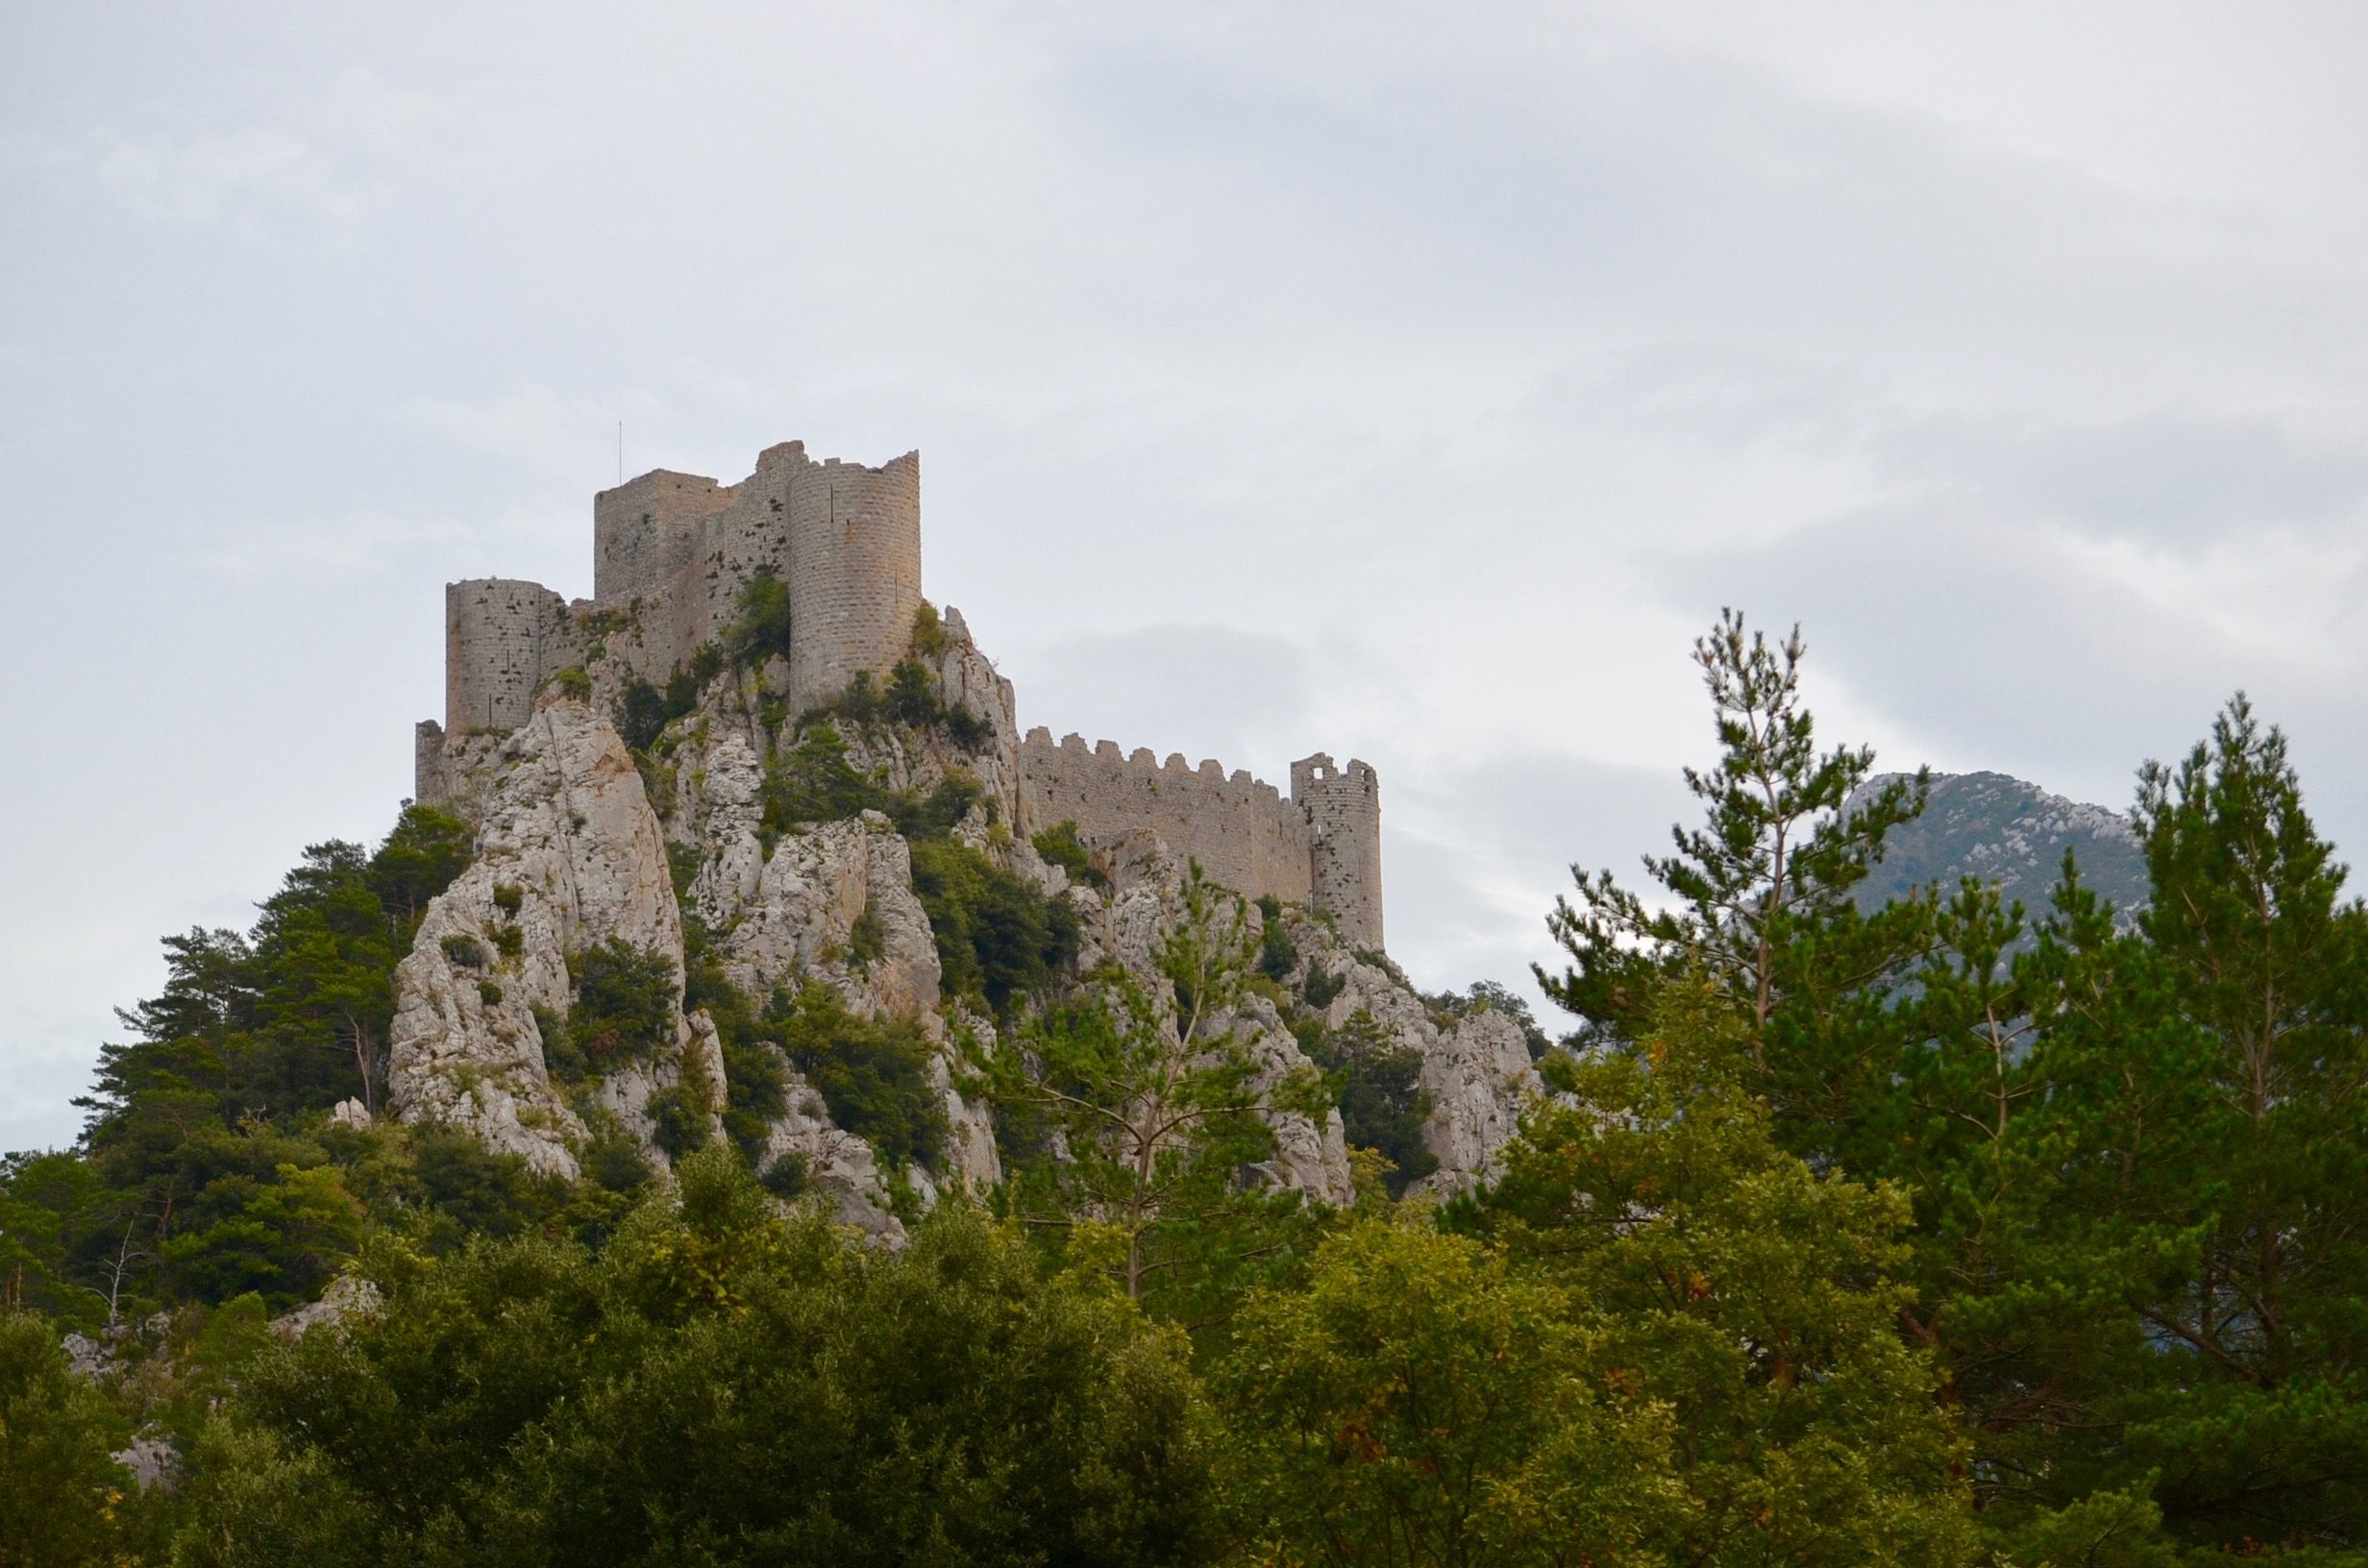  La Cité de Carcassonne et ses 7 châteaux sentinelles/aufildeslieux.fr/ Puilaurens© K.HIBBS